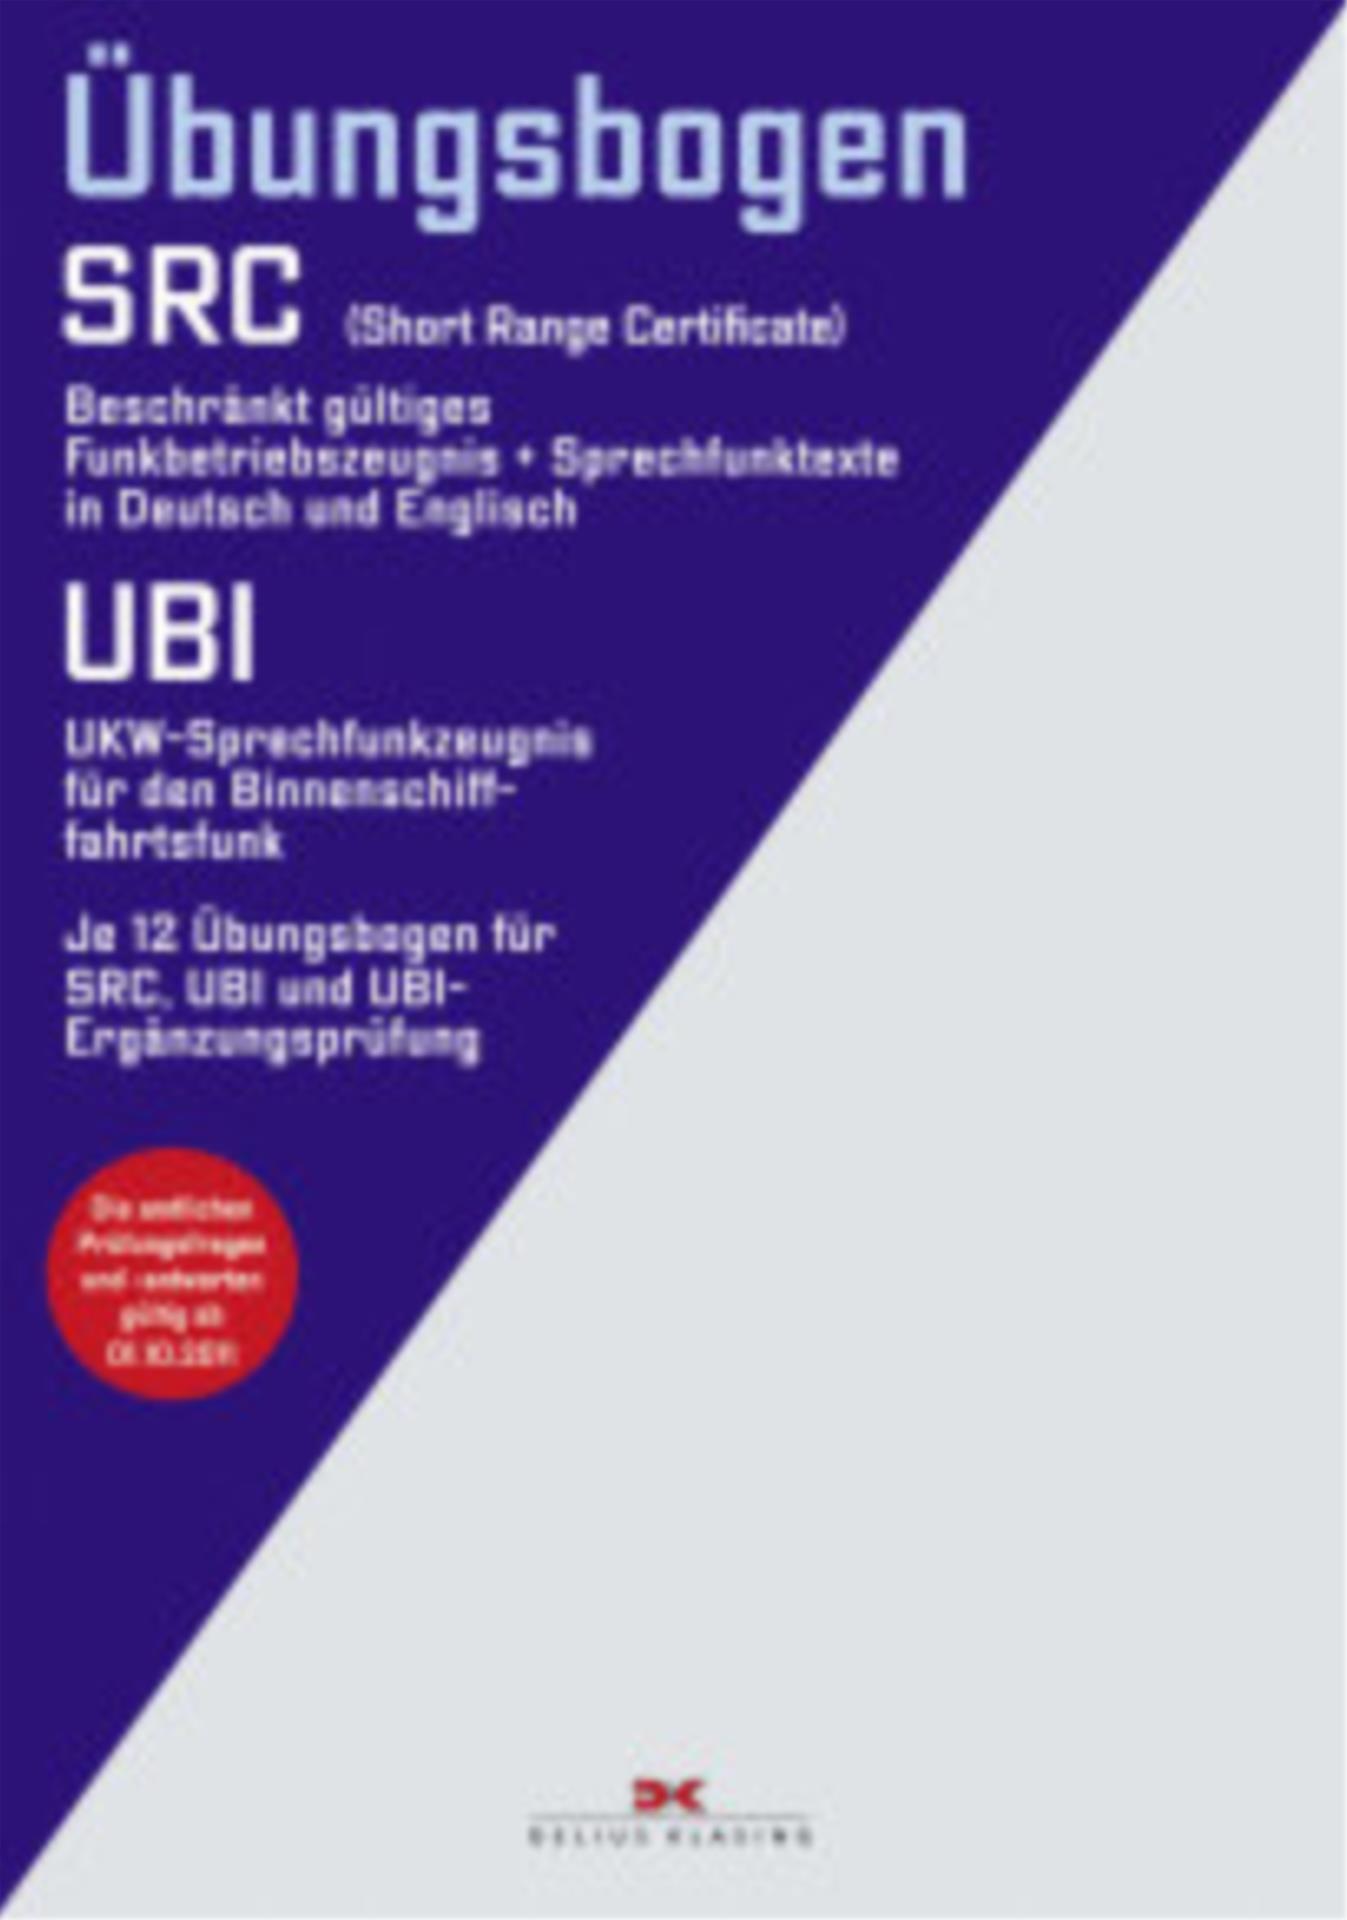 Funkbetriebszeugnis(SRC)/UKW-Sprechfunk Binnen (UBI)